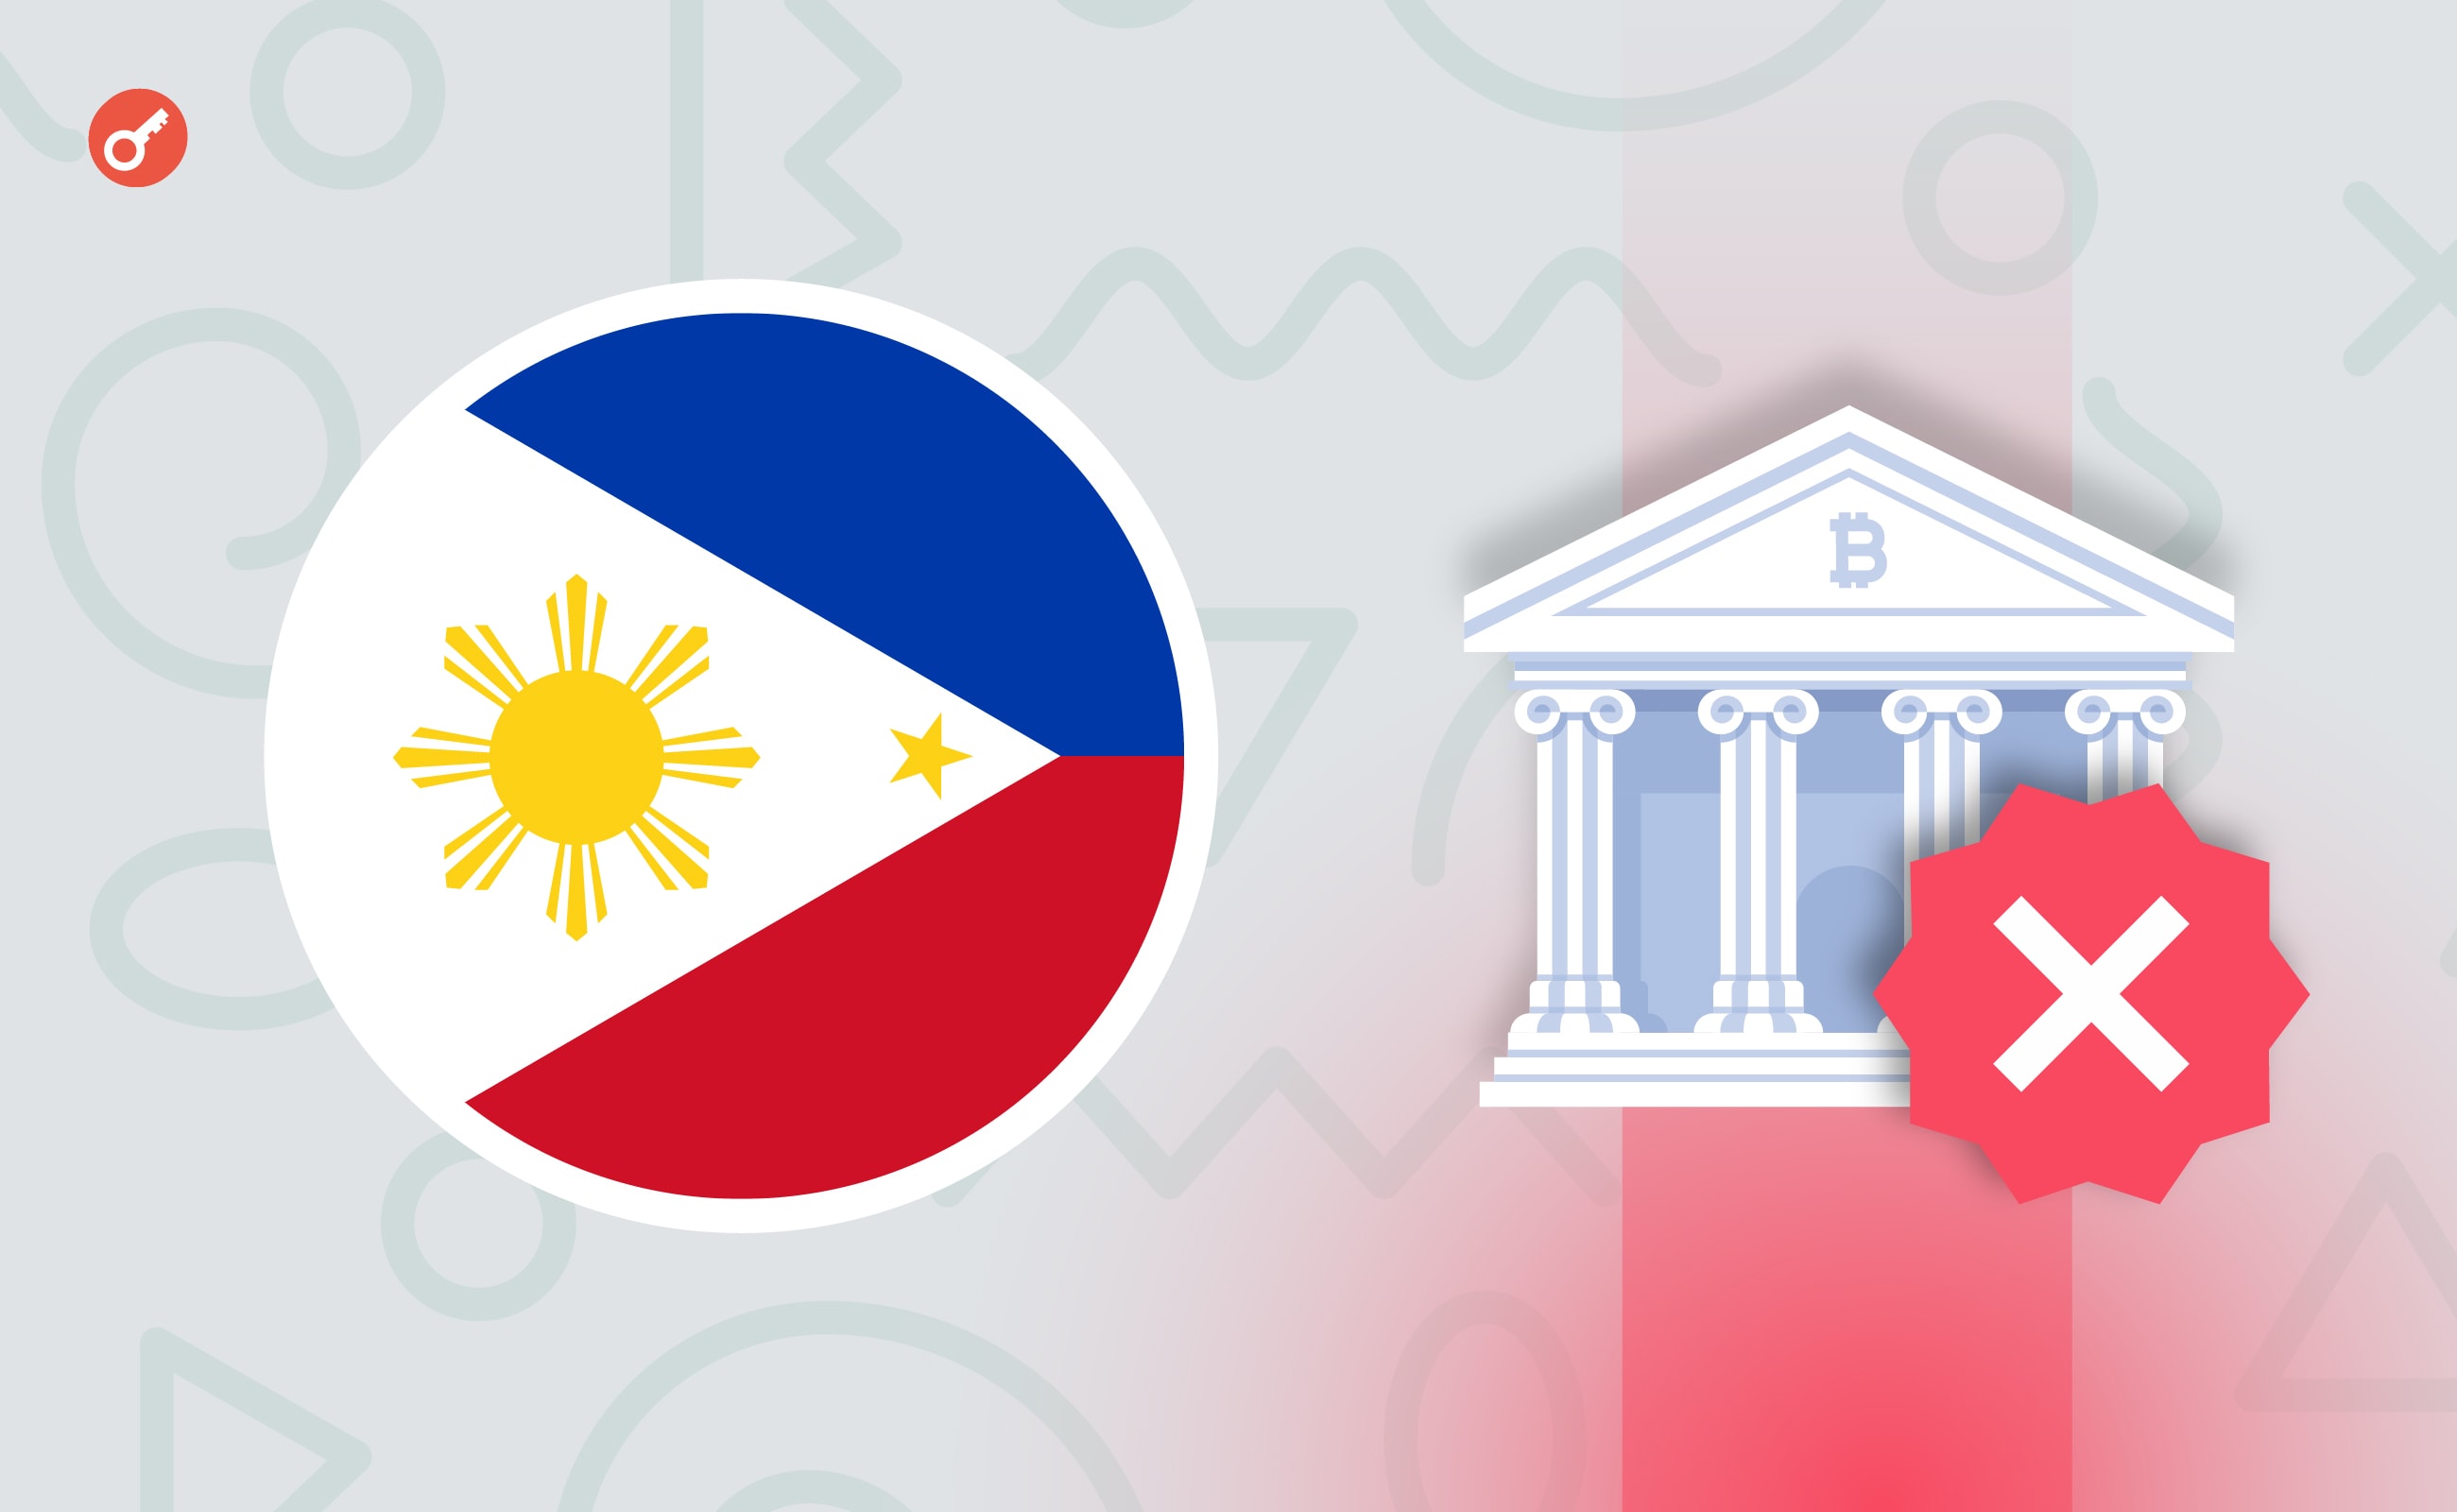 SEC Филиппин потребовала удалить приложение Binance из AppStore и Google Play. Заглавный коллаж новости.